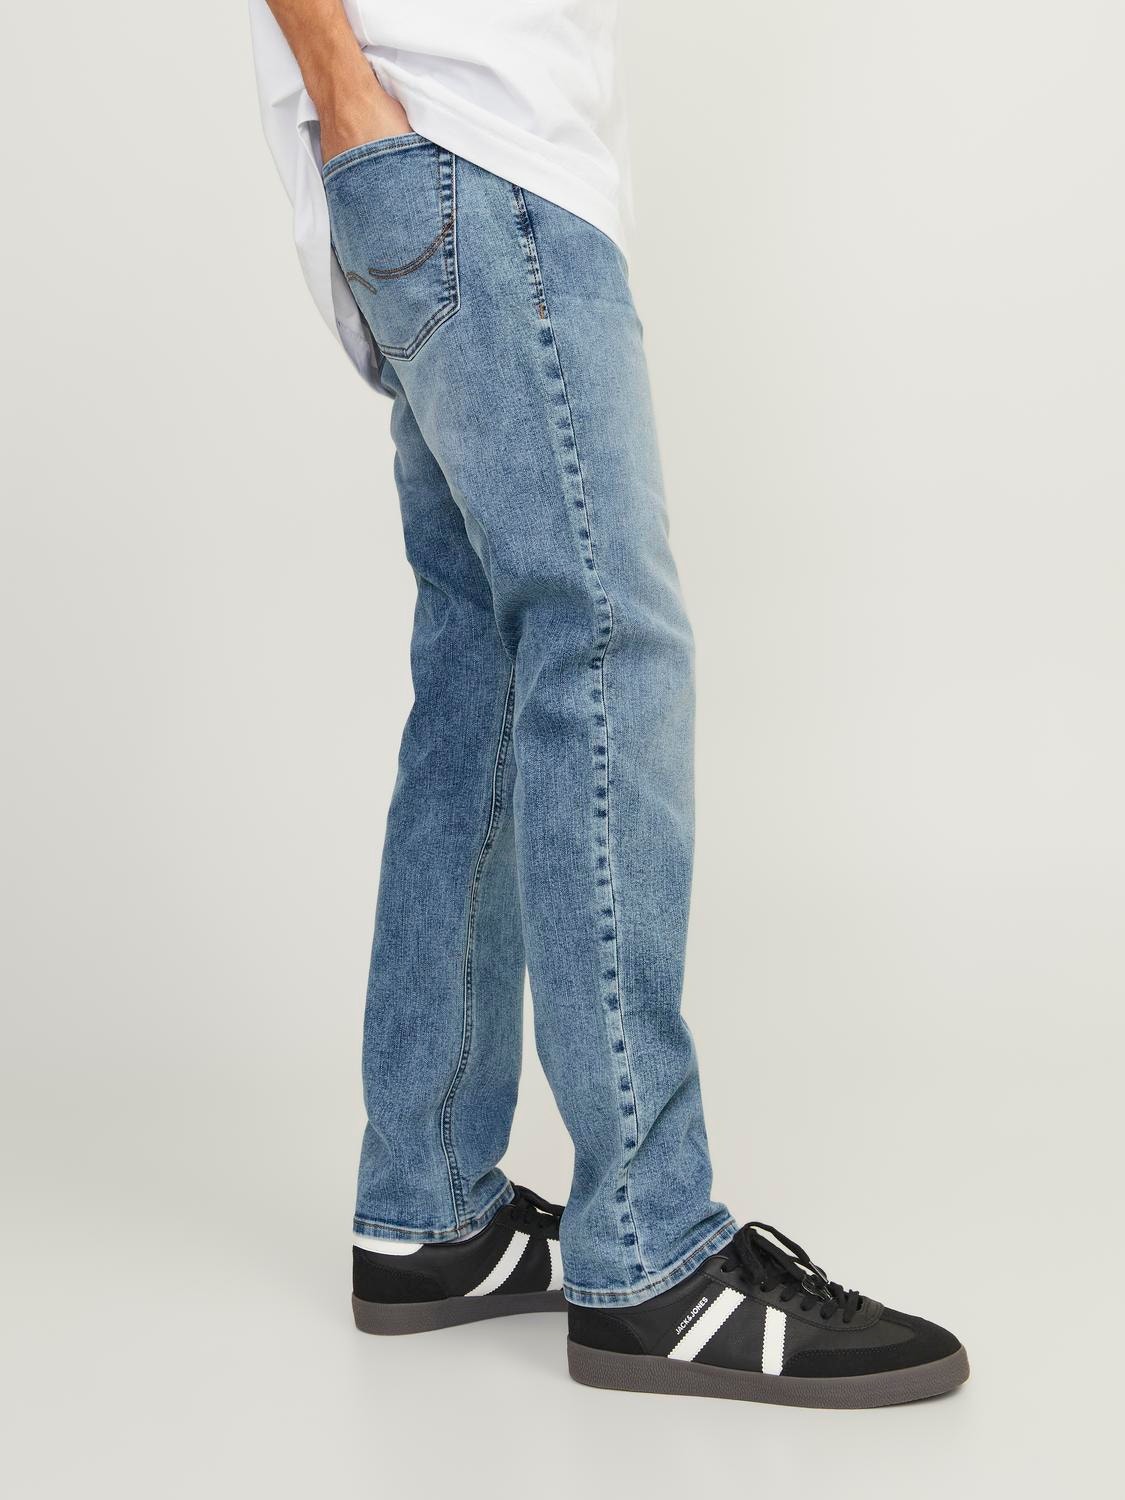 Jack & Jones JJIGLENN JJORIGINAL SQ 704 Slim fit jeans -Blue Denim - 12249191